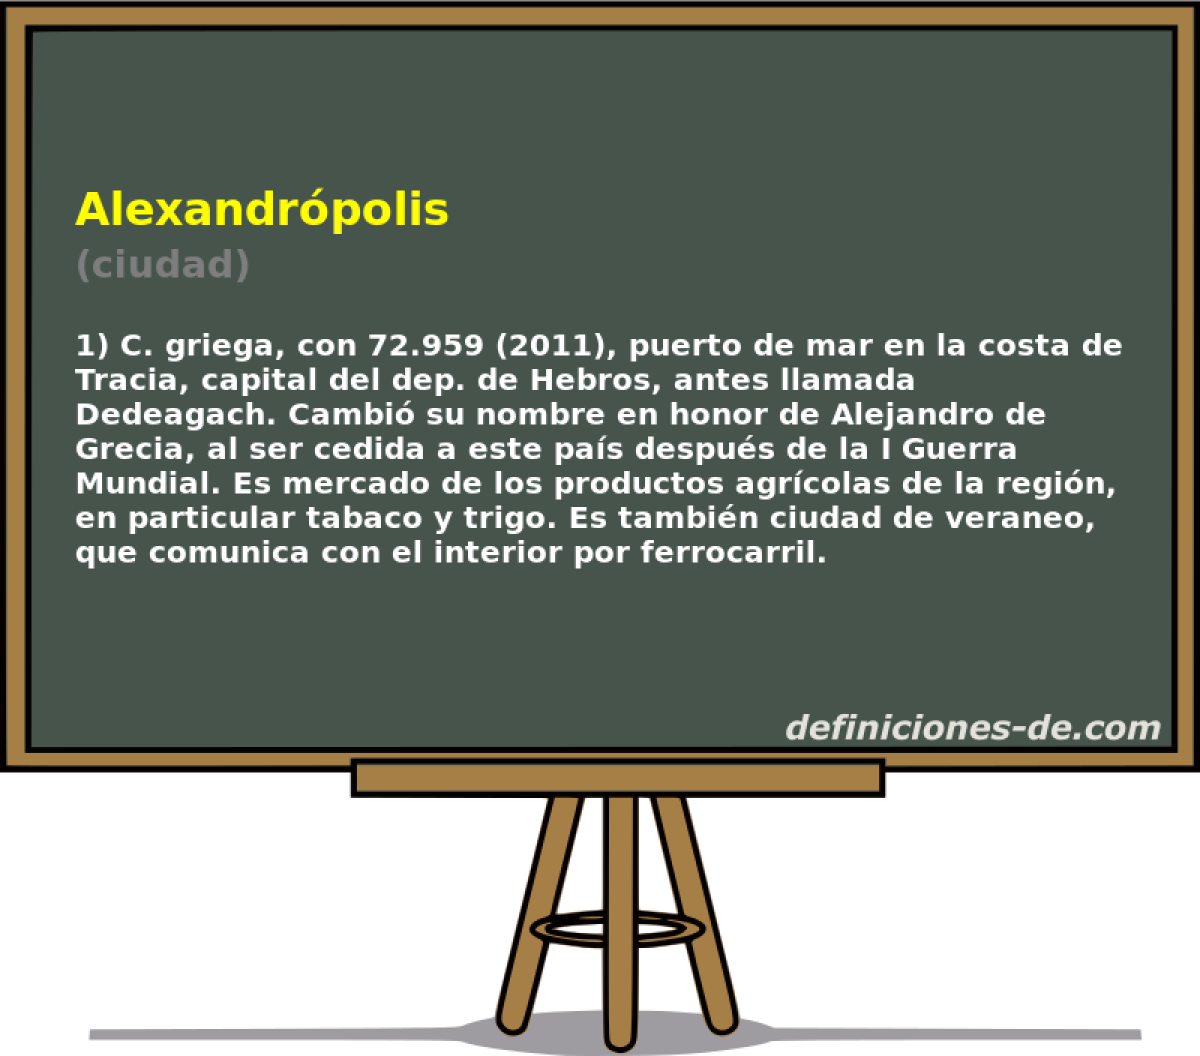 Alexandrpolis (ciudad)